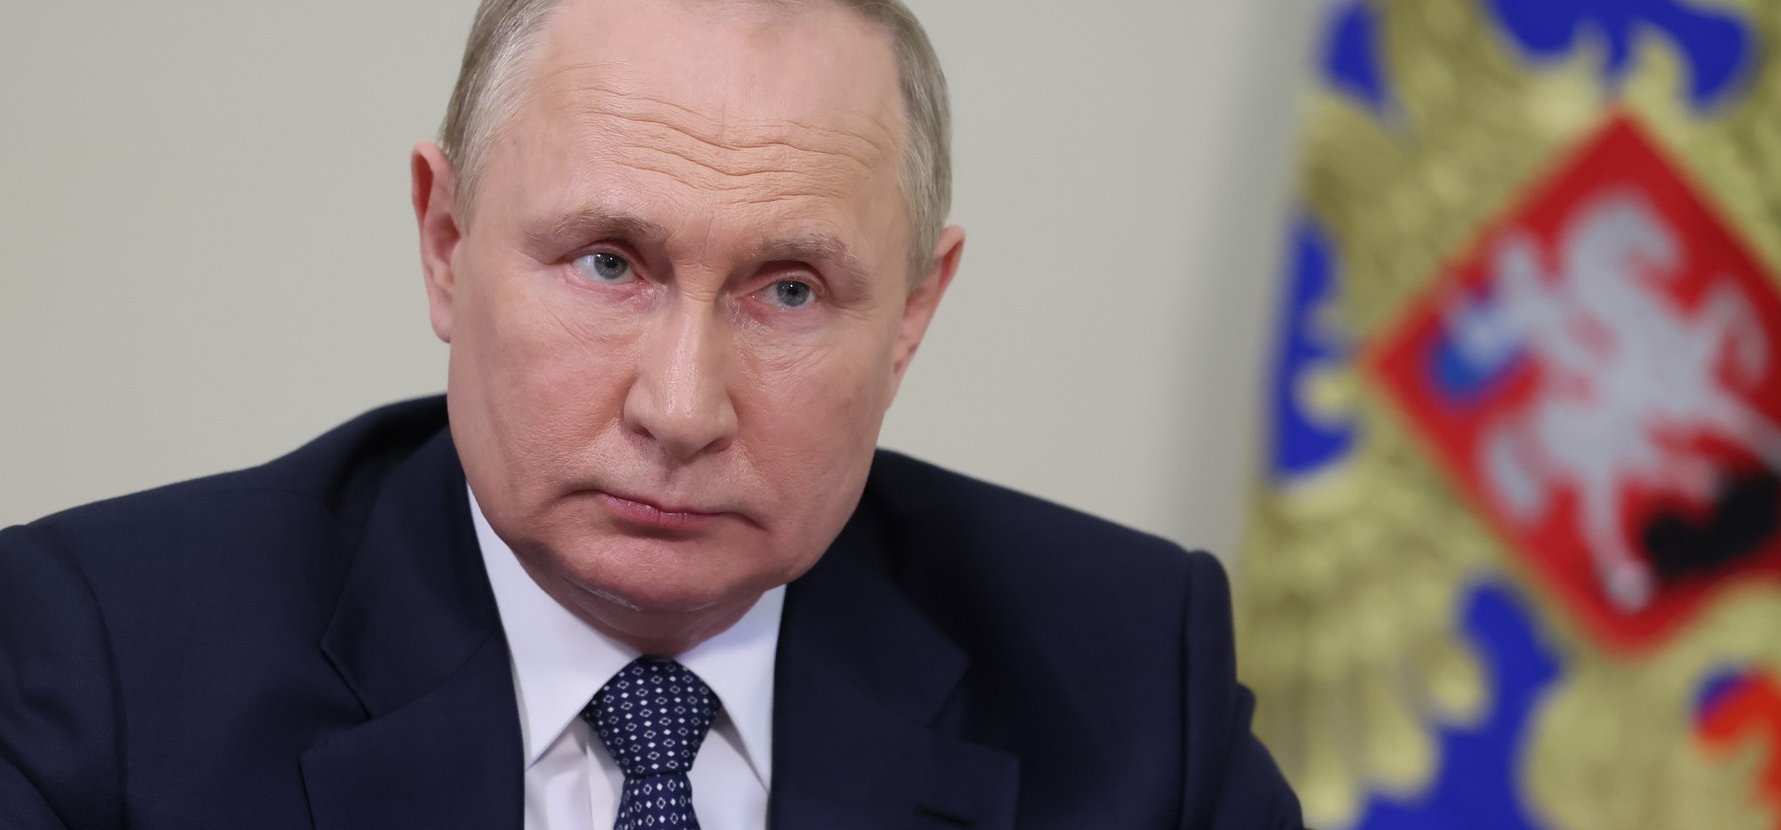 Keményen nekiment Putyinnak a britek új vezérkari főnöke - Meg vannak számlálva Oroszország napjai?